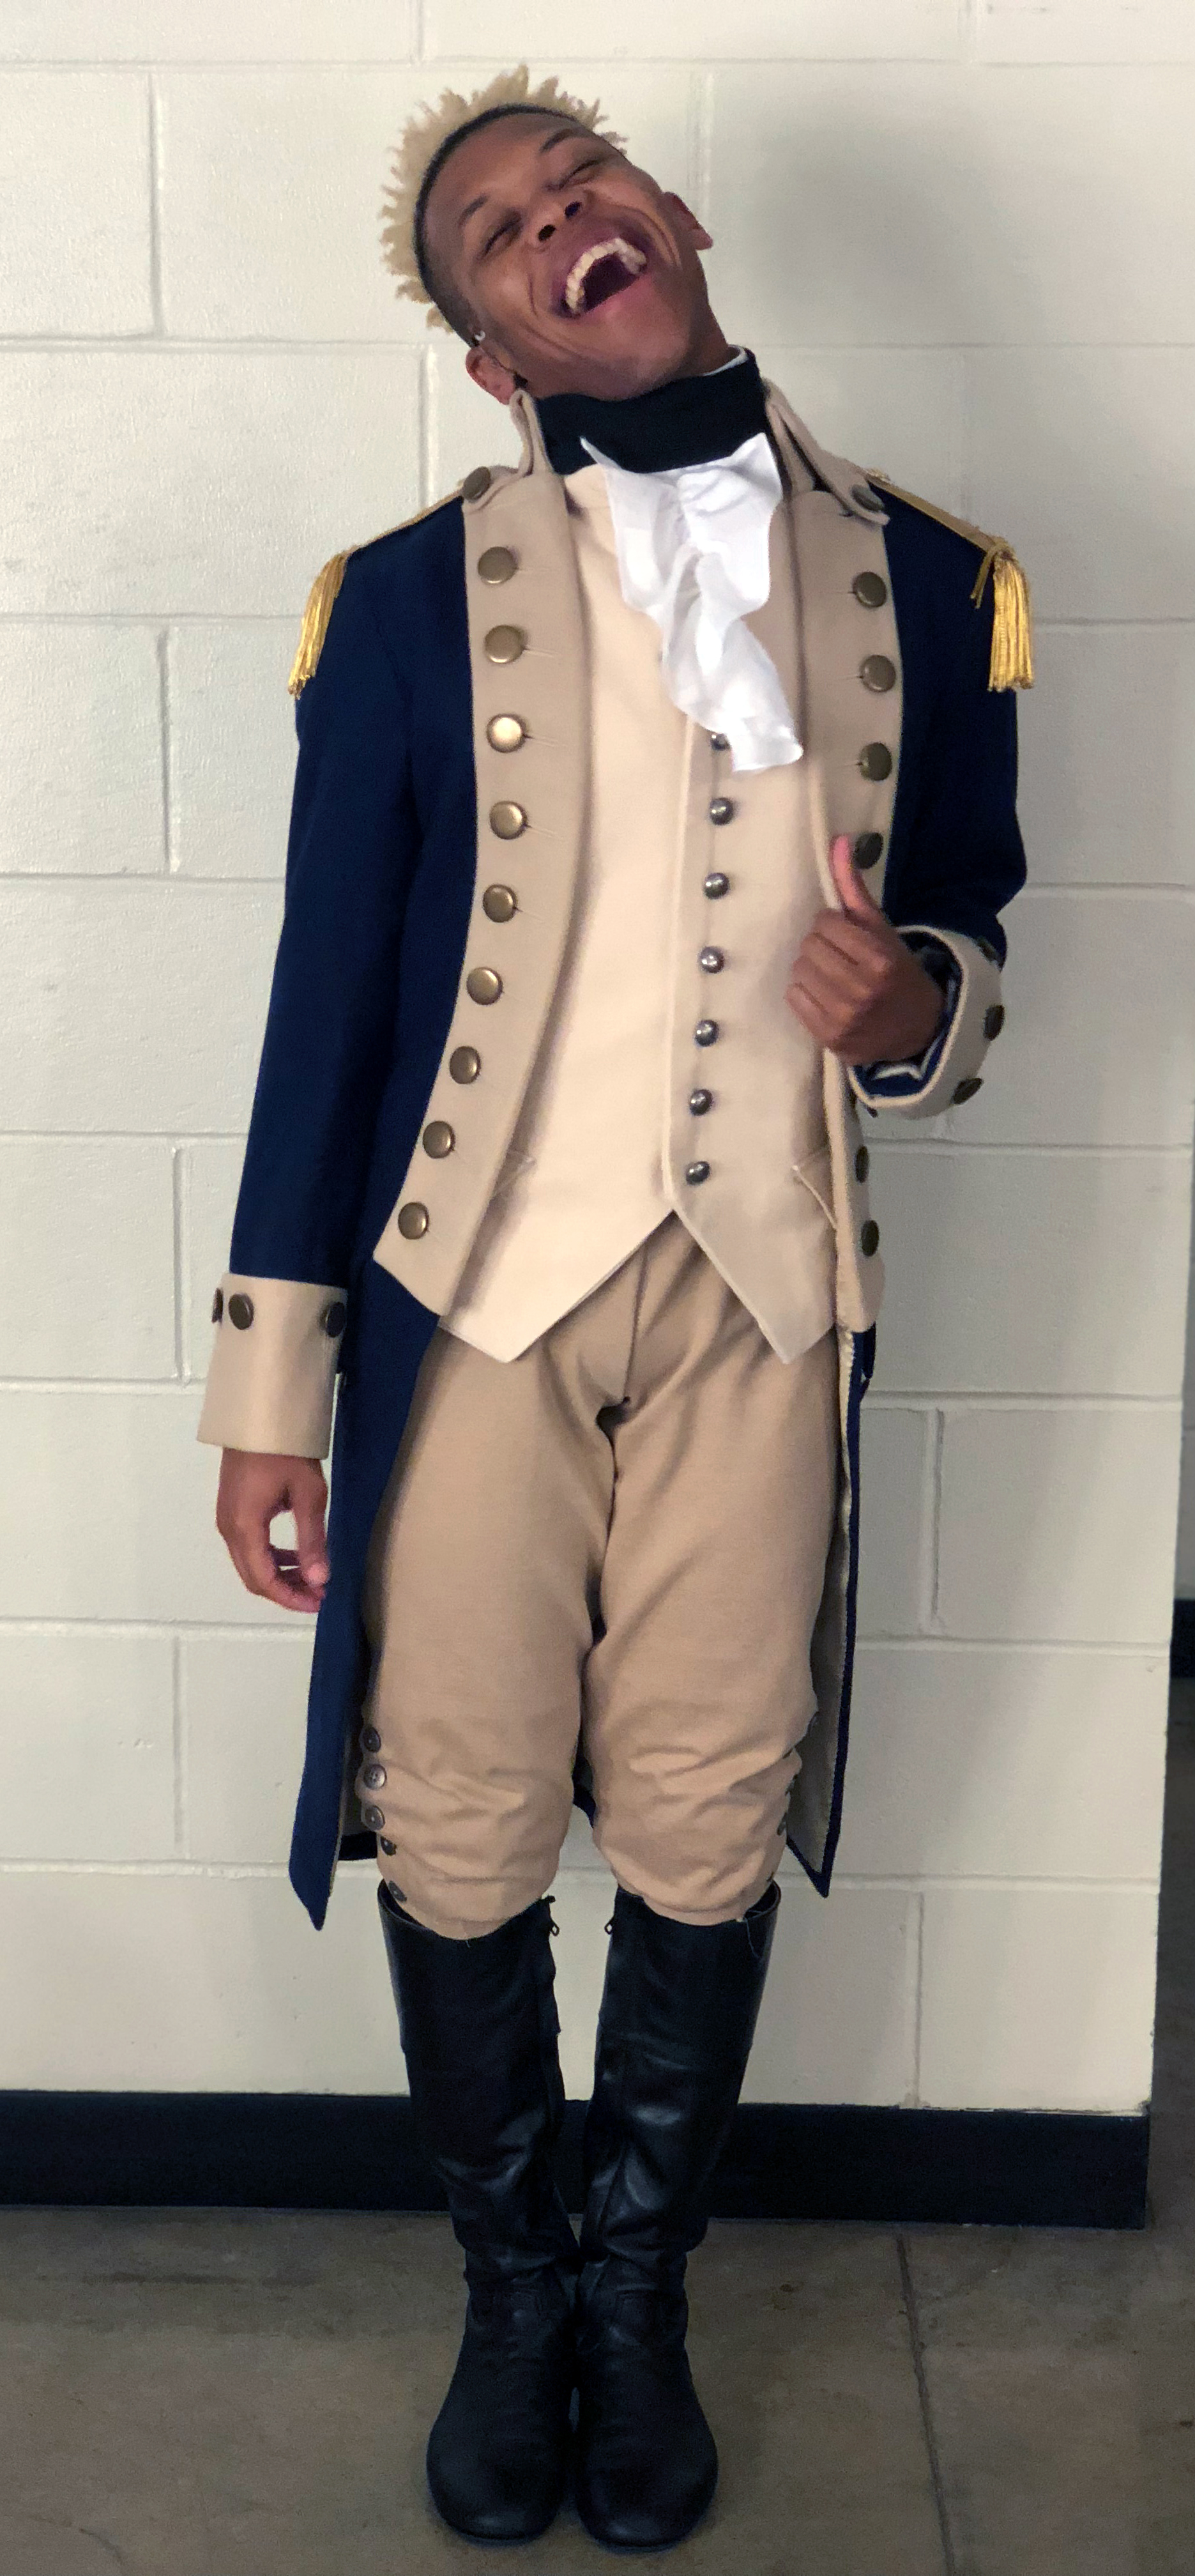 Eean Cochran in his costume for Hamilton